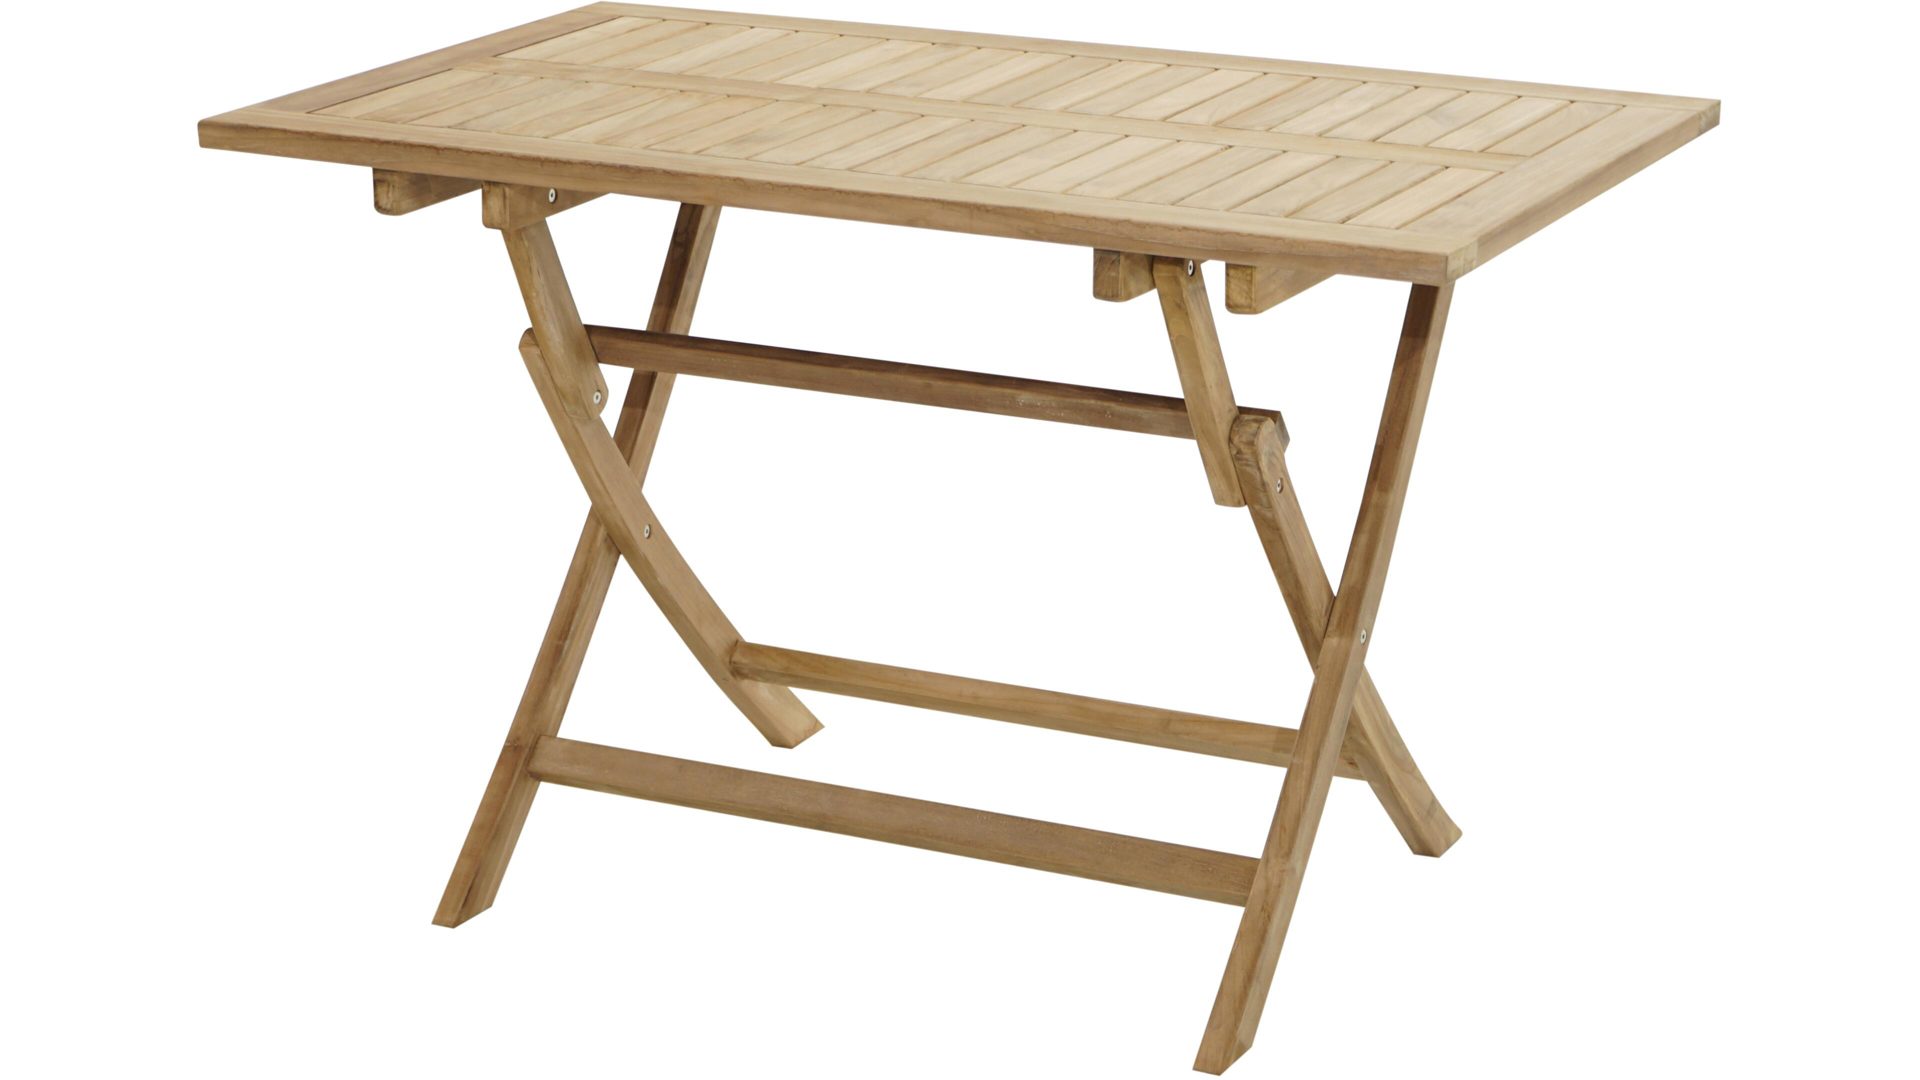 Gartentisch Ploß aus Holz in Holzfarben Ploß® Klapptisch York als Gartenmöbel honigfarbenes Teakholz – ca. 120 x 70 cm